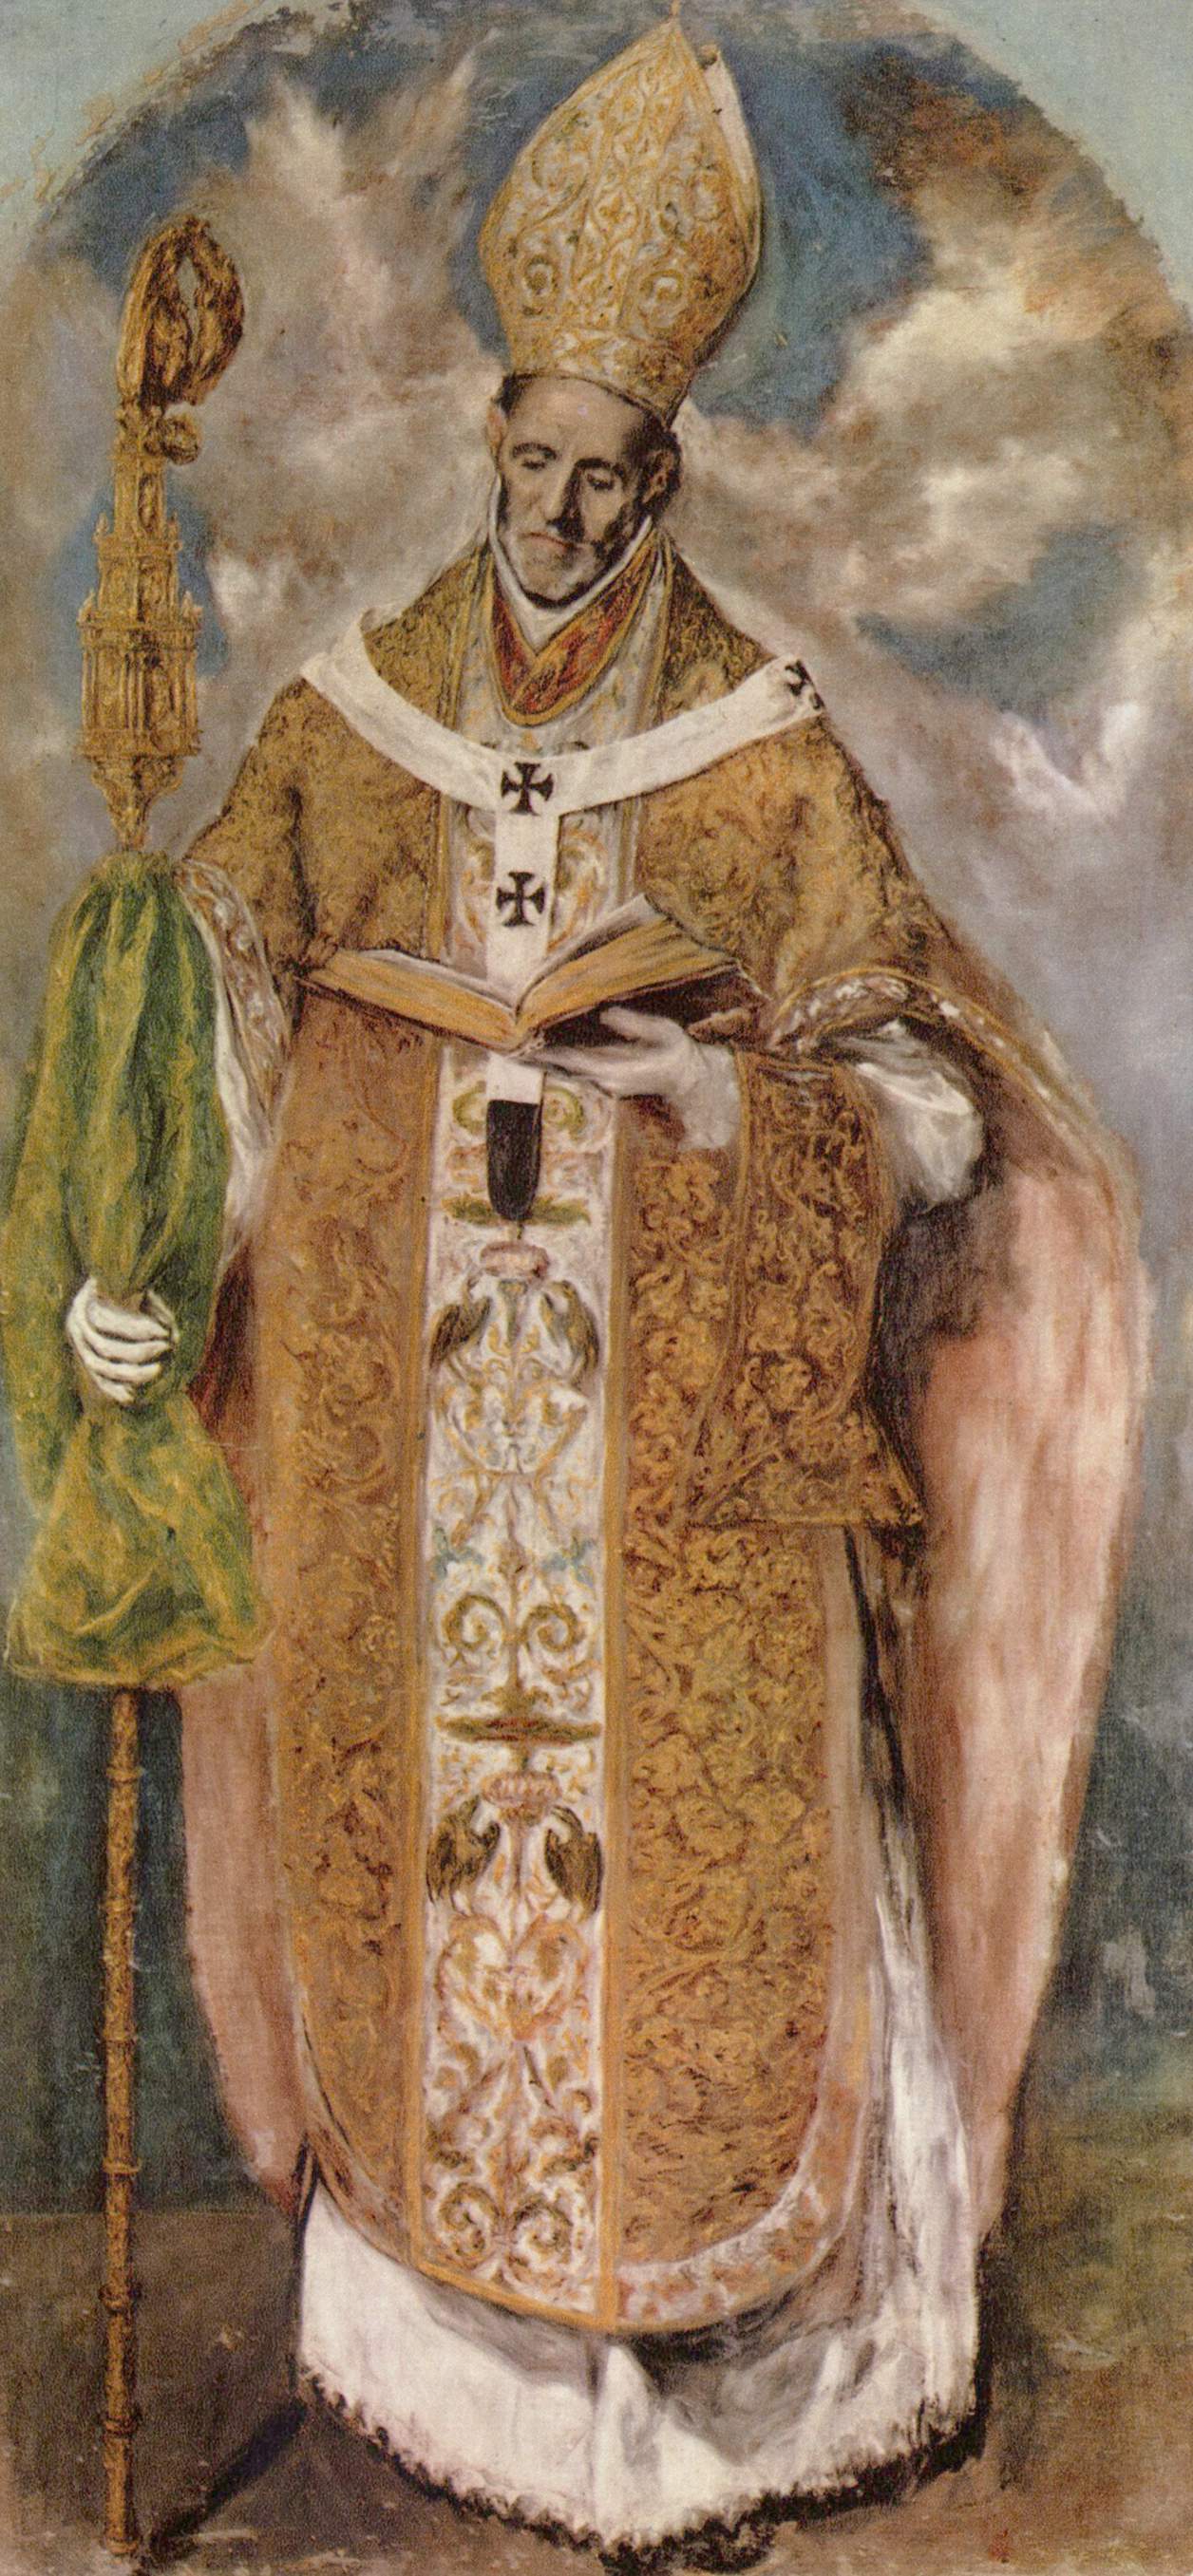 St. Idelfonso (1613).